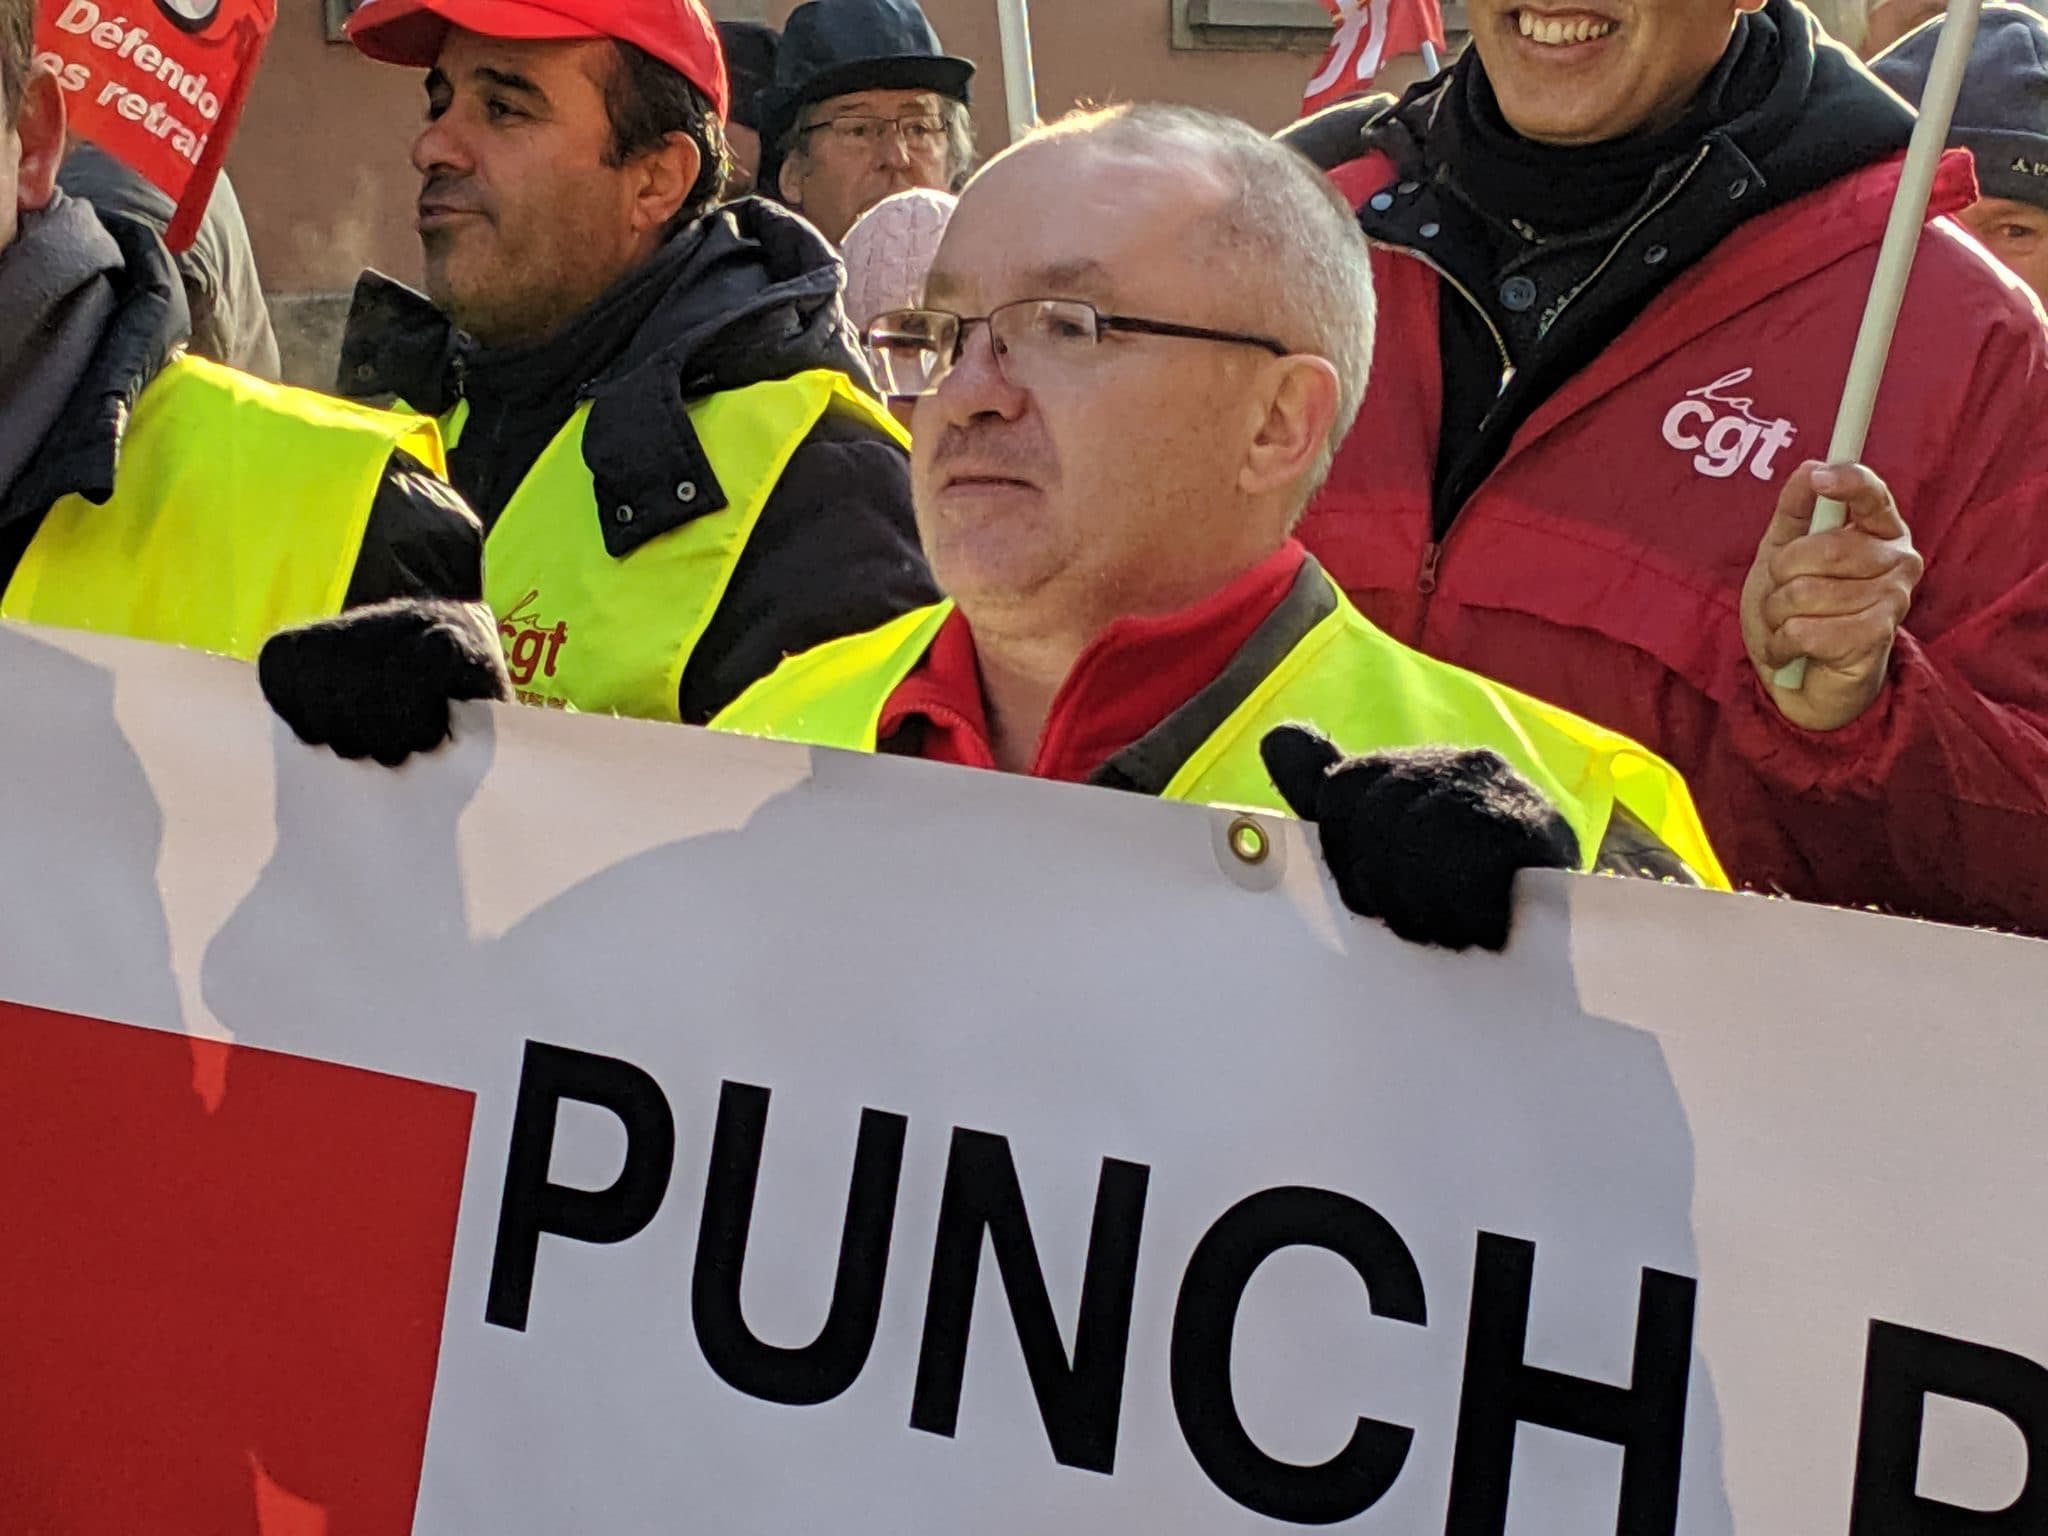 Des centaines d’emplois menacés chez Dumarey, ex-Punch : CGT et CFDT appellent à la grève